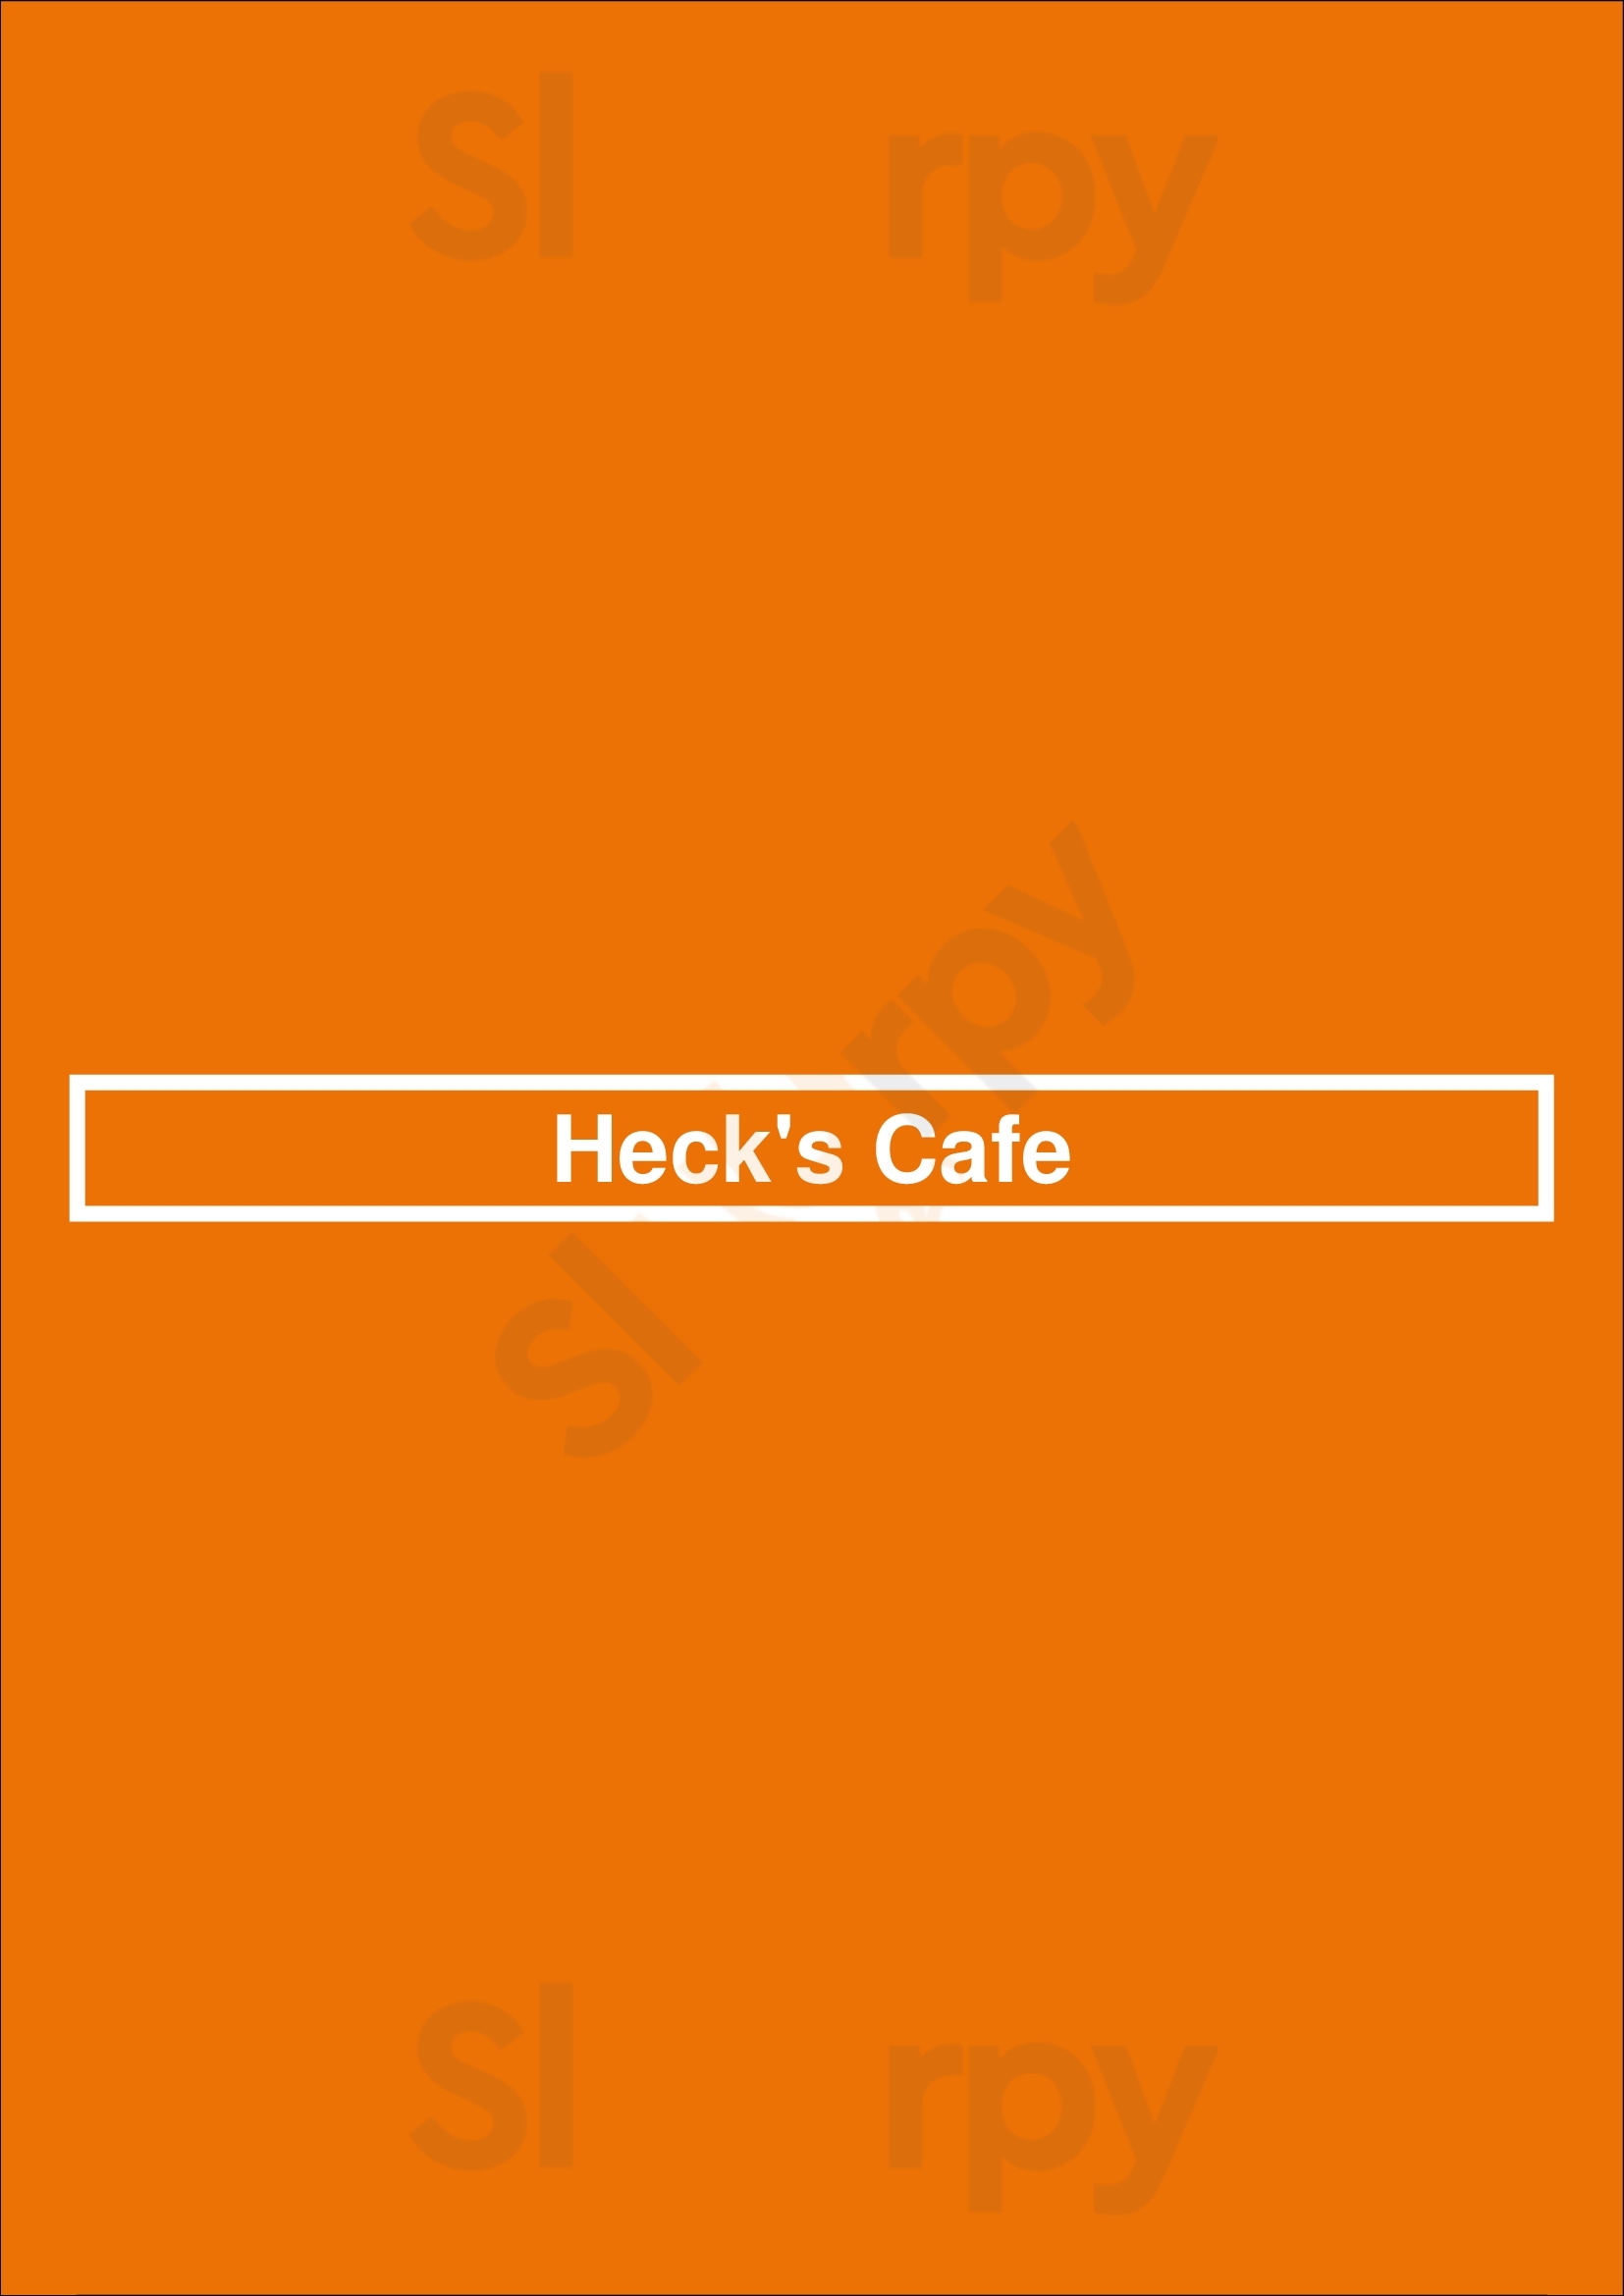 Heck's Cafe Cleveland Menu - 1